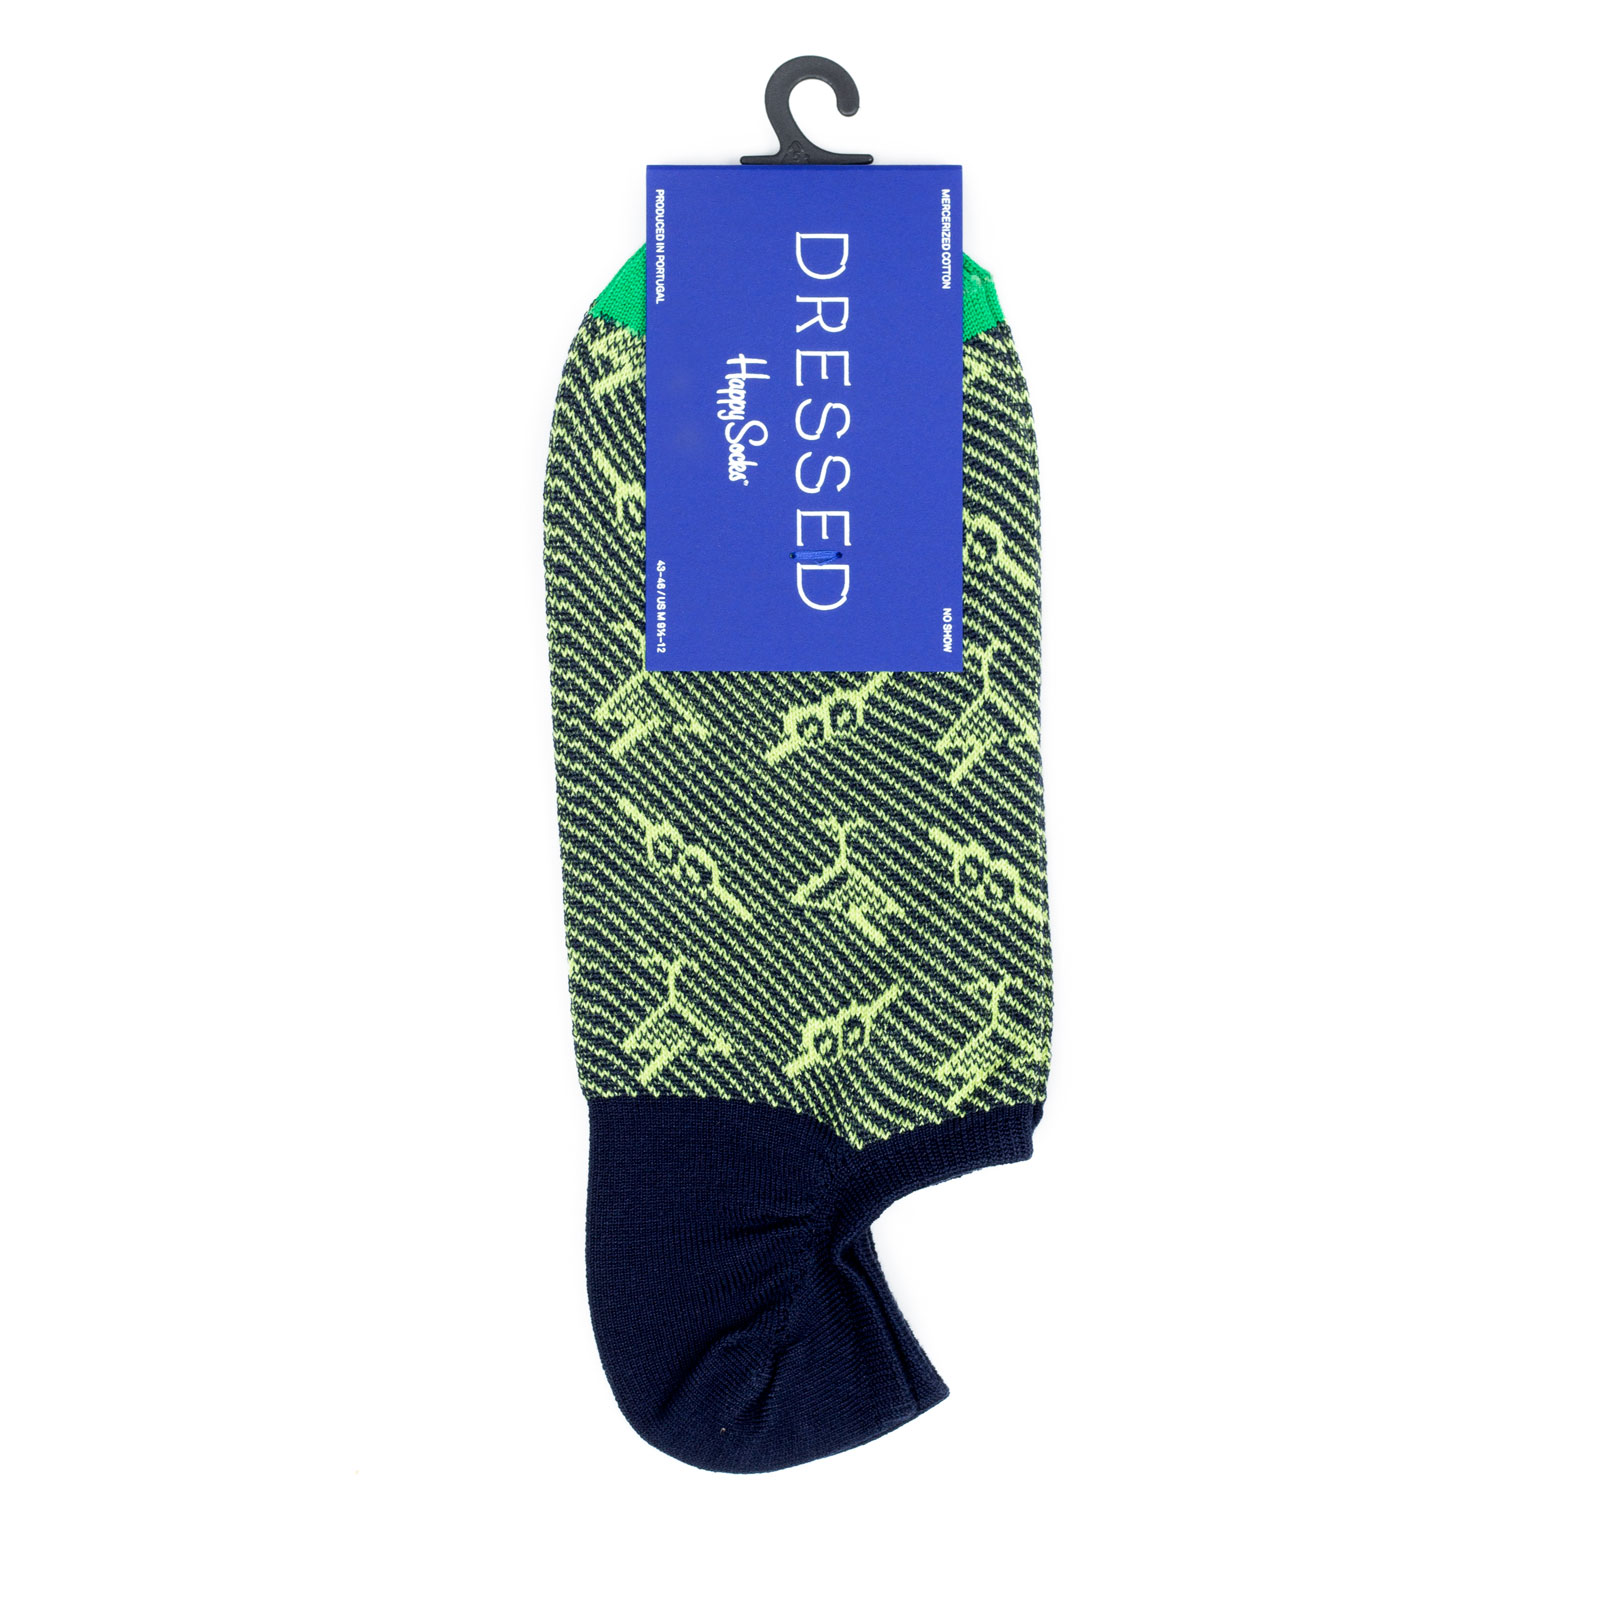 фото Носки мужские happy socks dressed_no_show_martini зеленые 39-42